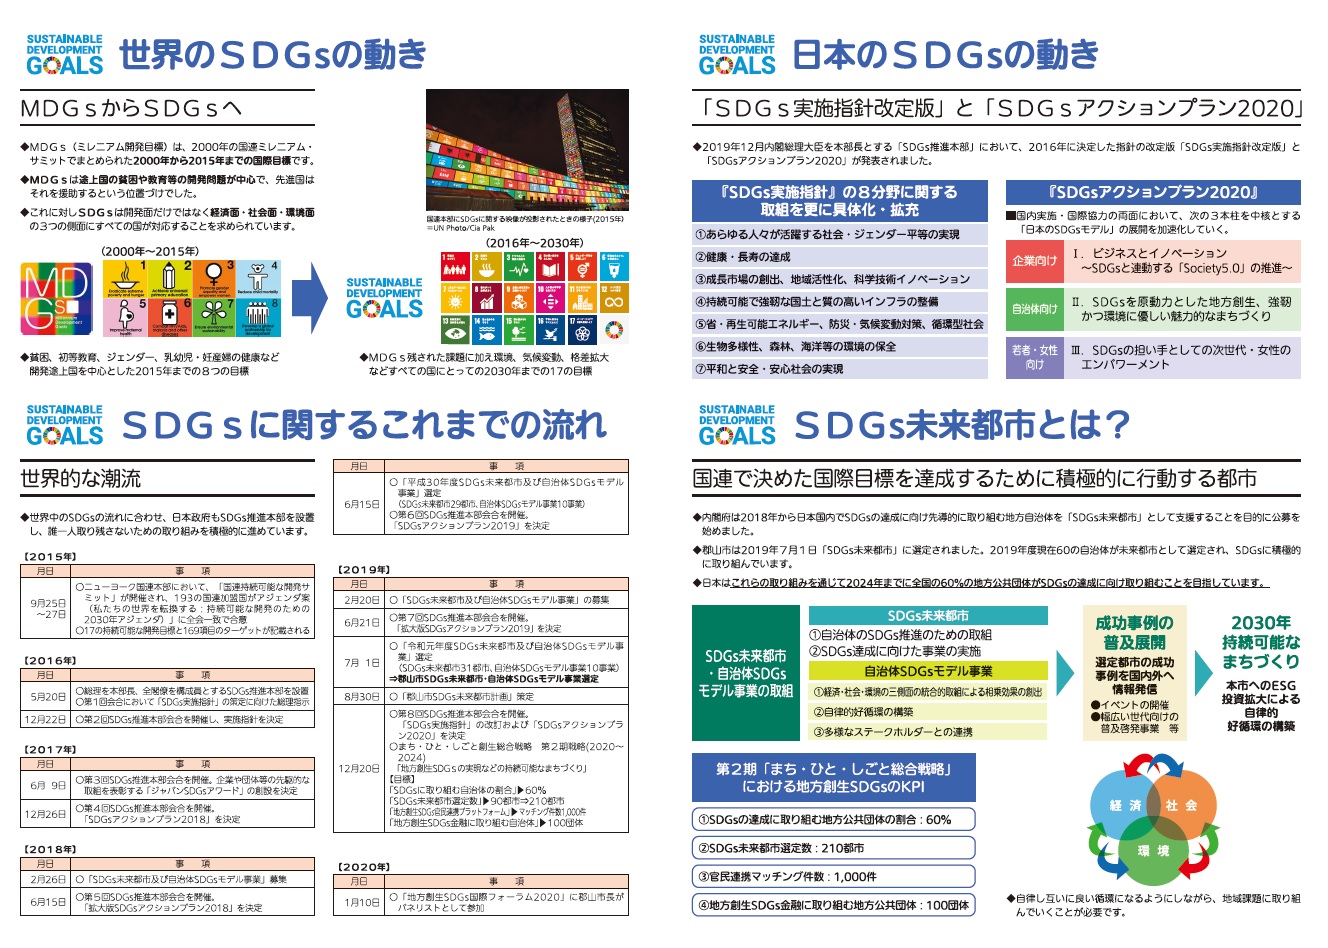 世界のSDGsの動き、SDGsに関するこれまでの流れ、日本のSDGsの動き、SDGs未来都市とはの画像